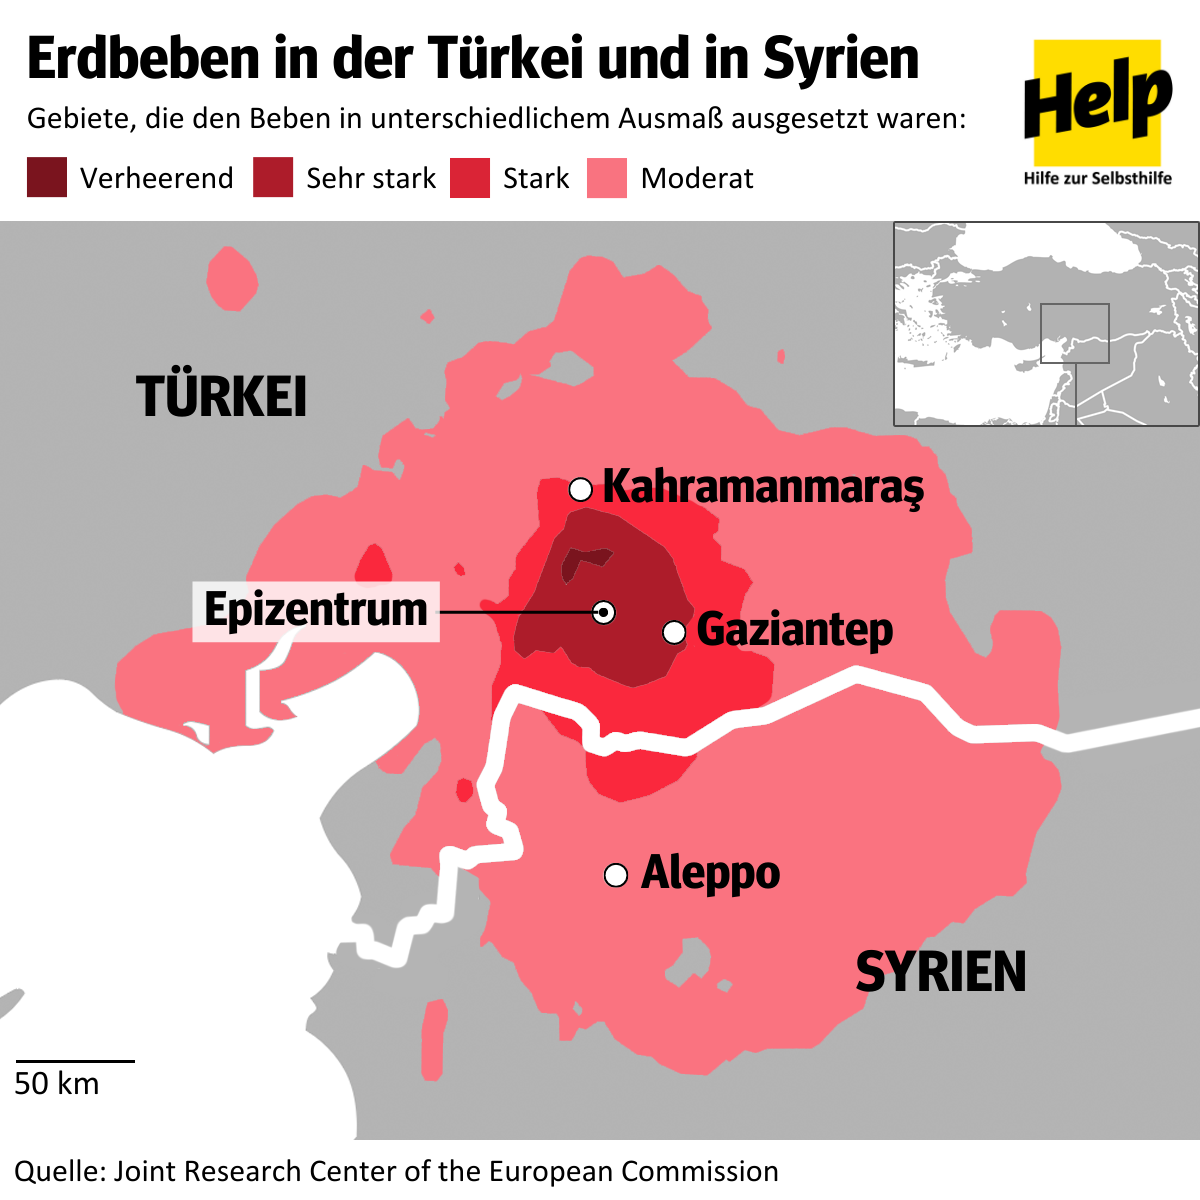 Karte zeigt Erdbebengebiet in der Türkei und Syrien